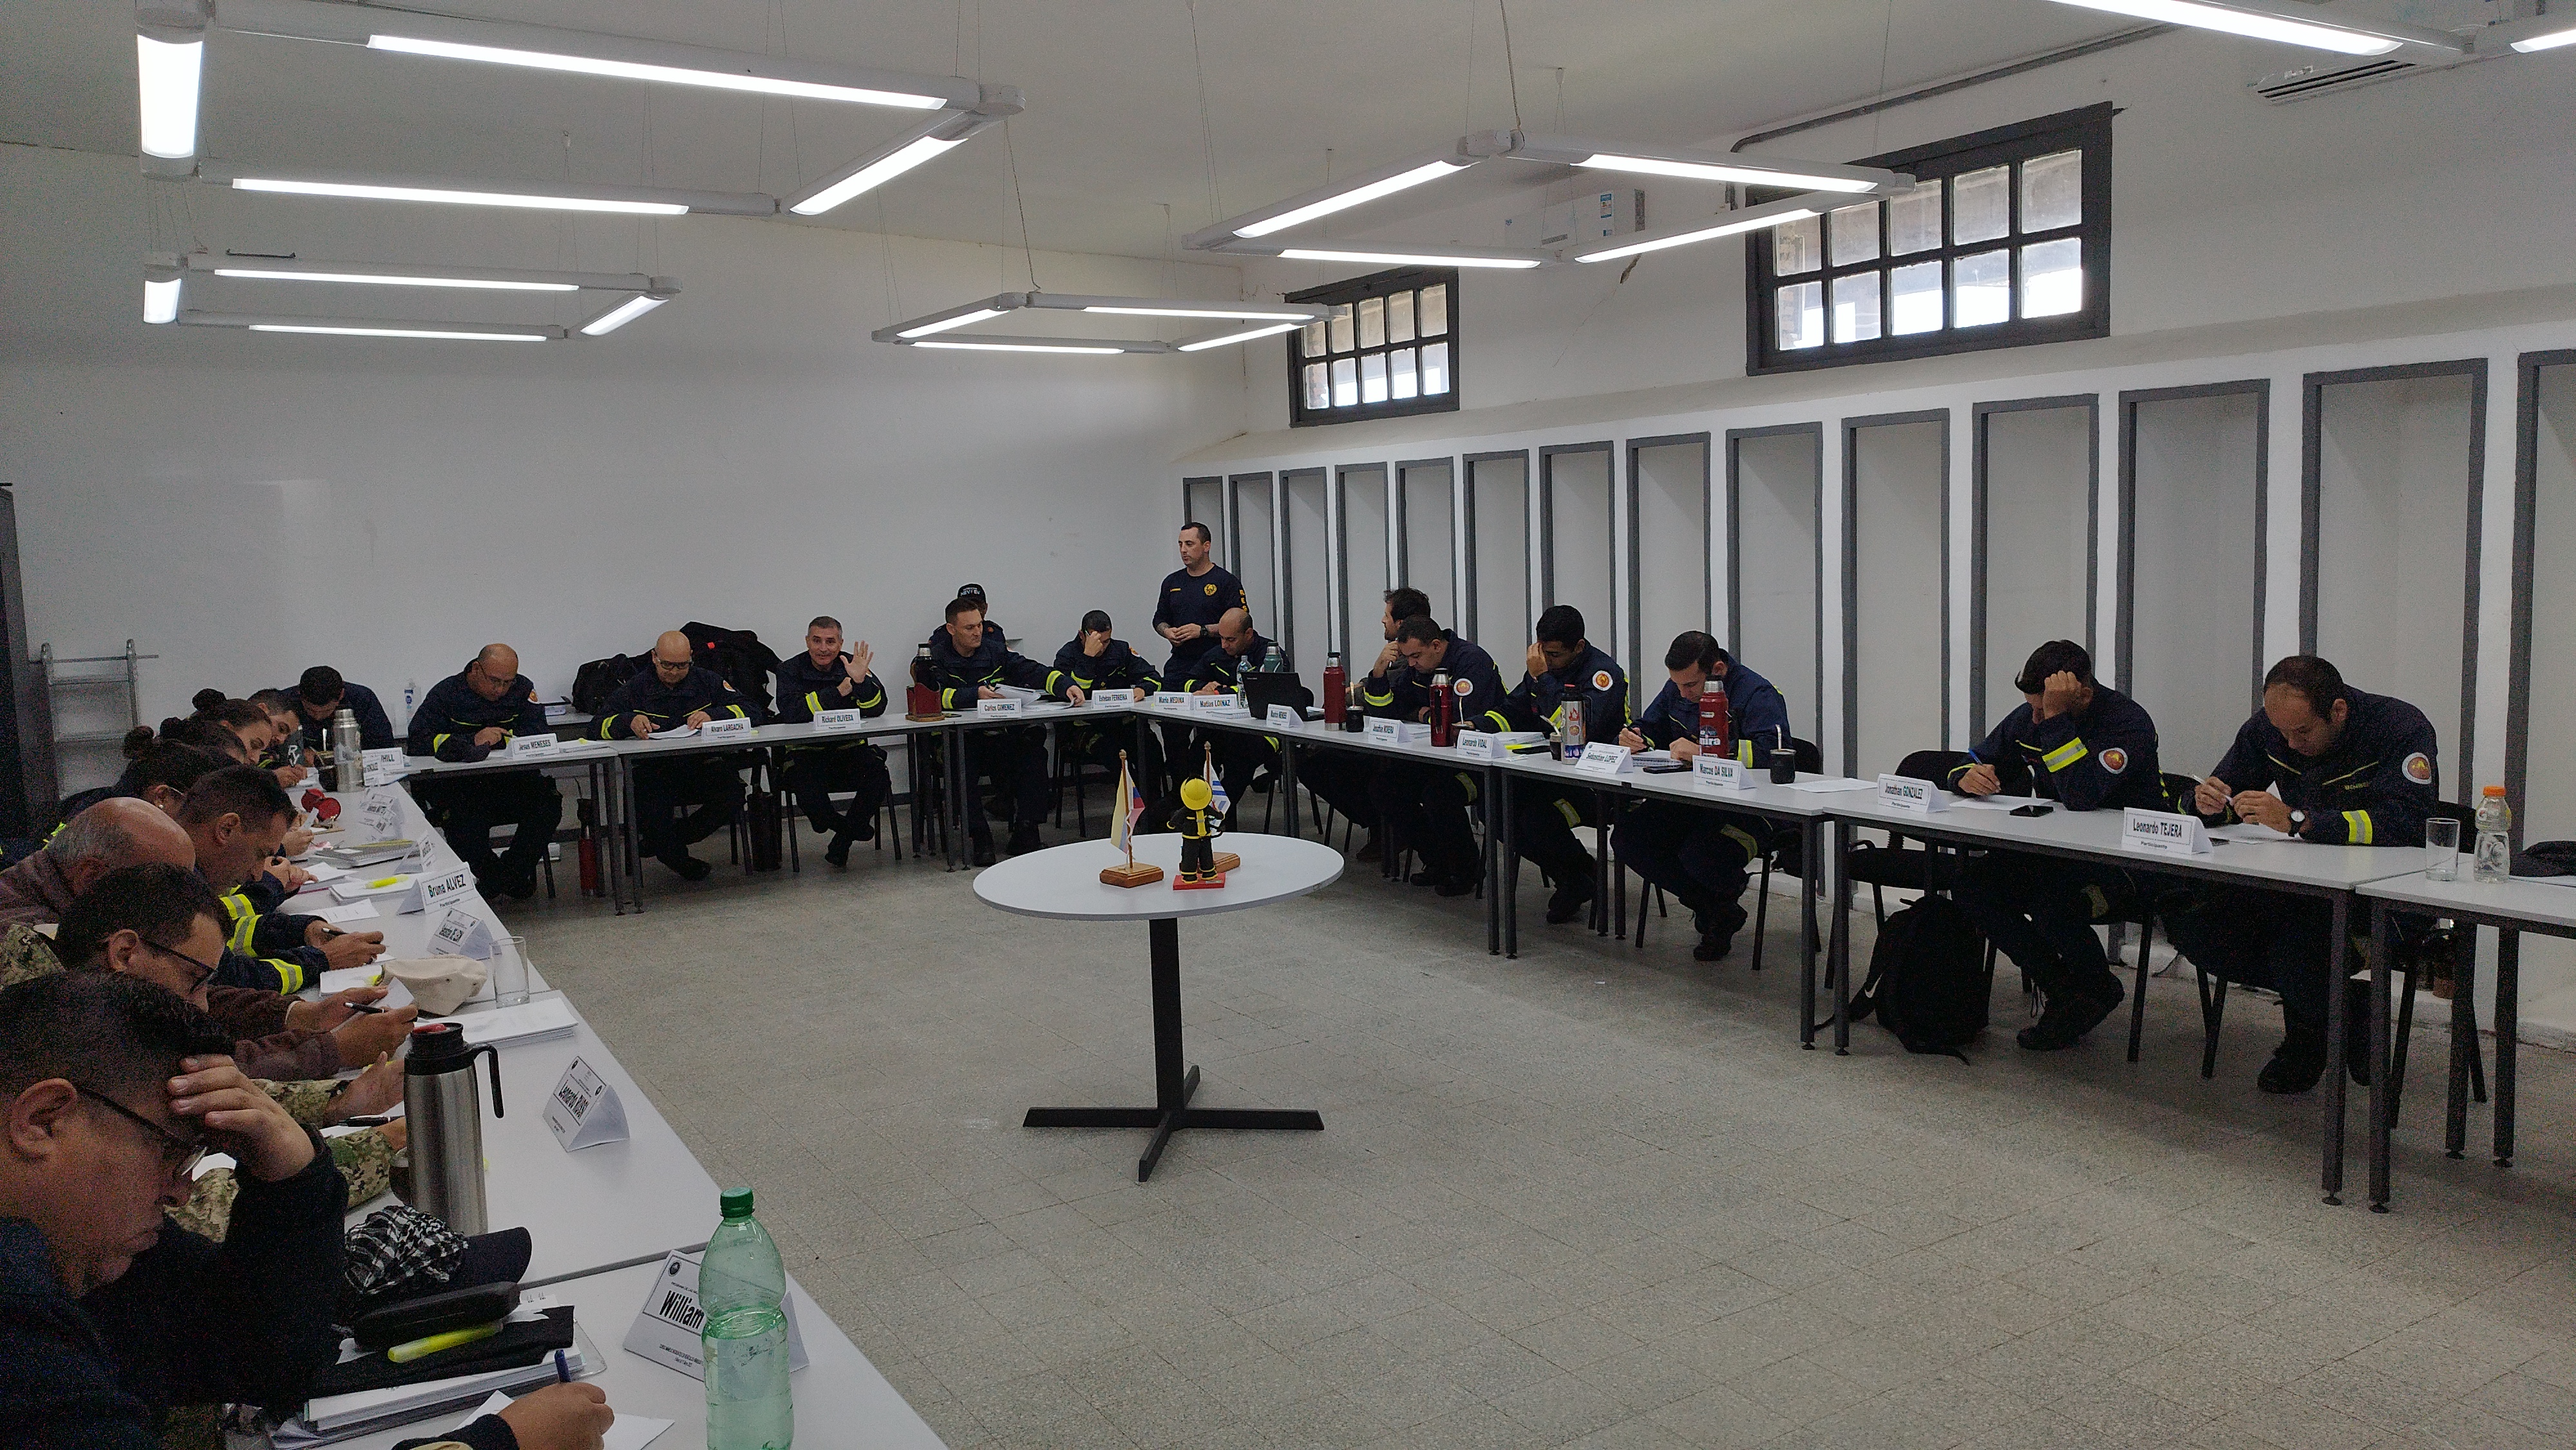 IMG_20230511_120945-t7XdkZE1.jpg - El pasado jueves 11 de mayo culminó la &#034;Capacitación para bomberos sobre manejo de incidentes relacionados con la movilidad eléctrica&#034; en donde se capacitaron a 25 bomberos en la Base Aérea de Santa Bernardina del departamento de Durazno. Esta capacitación es la continuación del primer curso regional que organizó la plataforma MOVE del Programa de la Naciones Unidas para el Medio Ambiente a finales de 2022 en Paraguay, donde participaron y se formaron dos bomberos instructores de Uruguay.